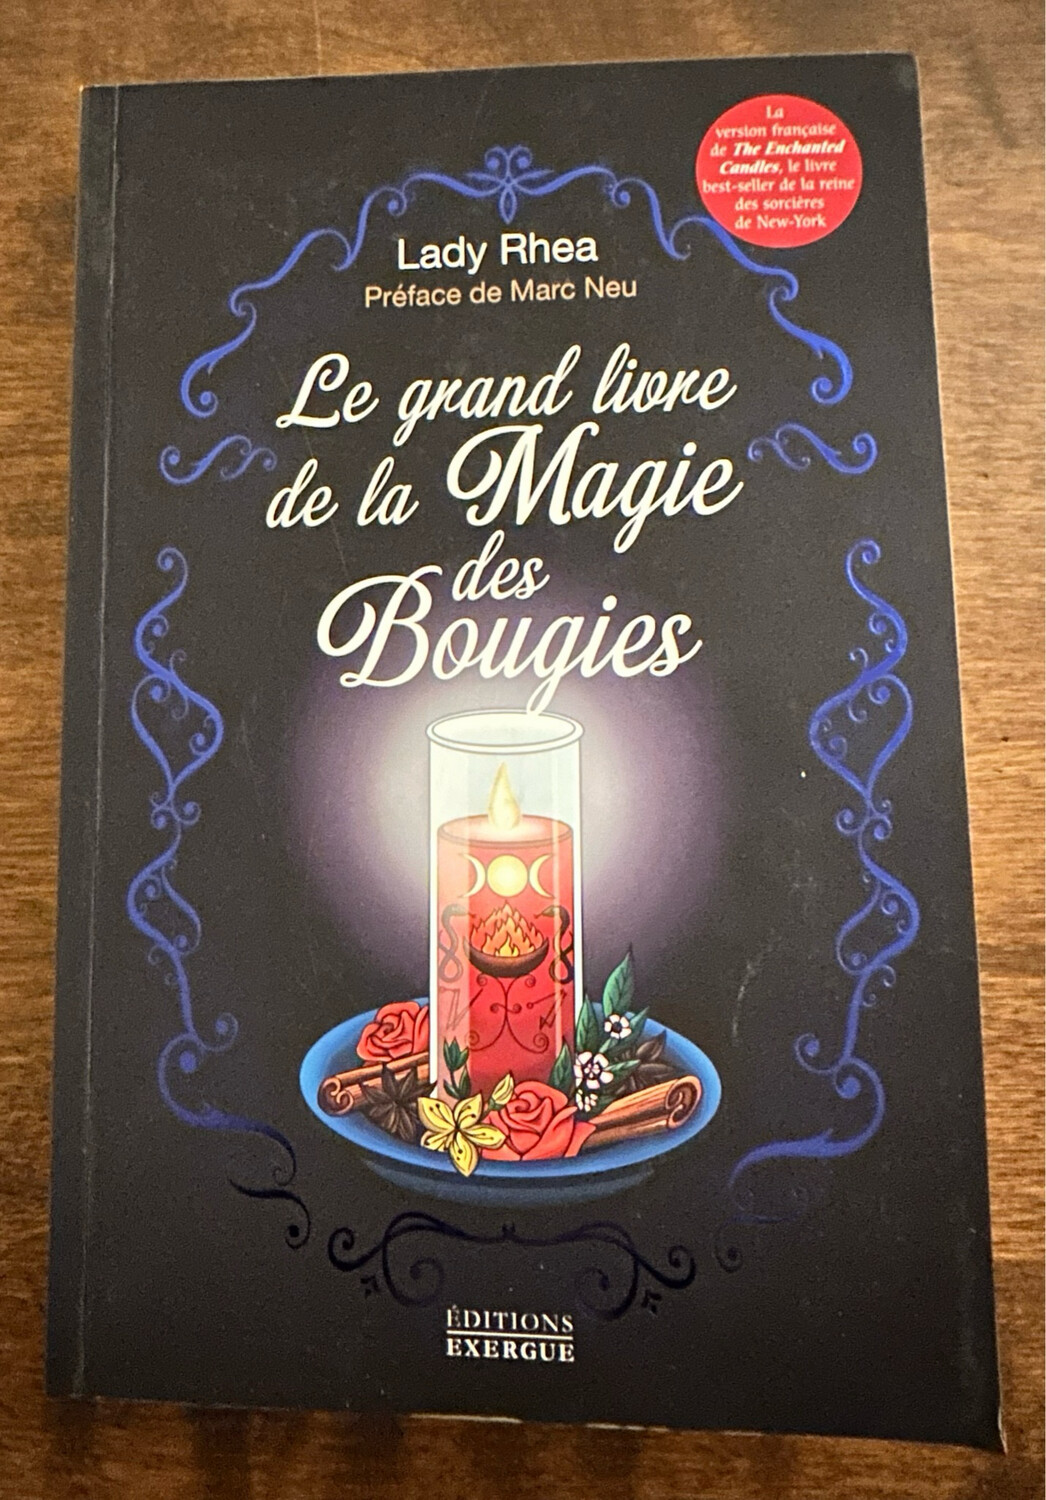 Le grand livre de la Magie des bougies